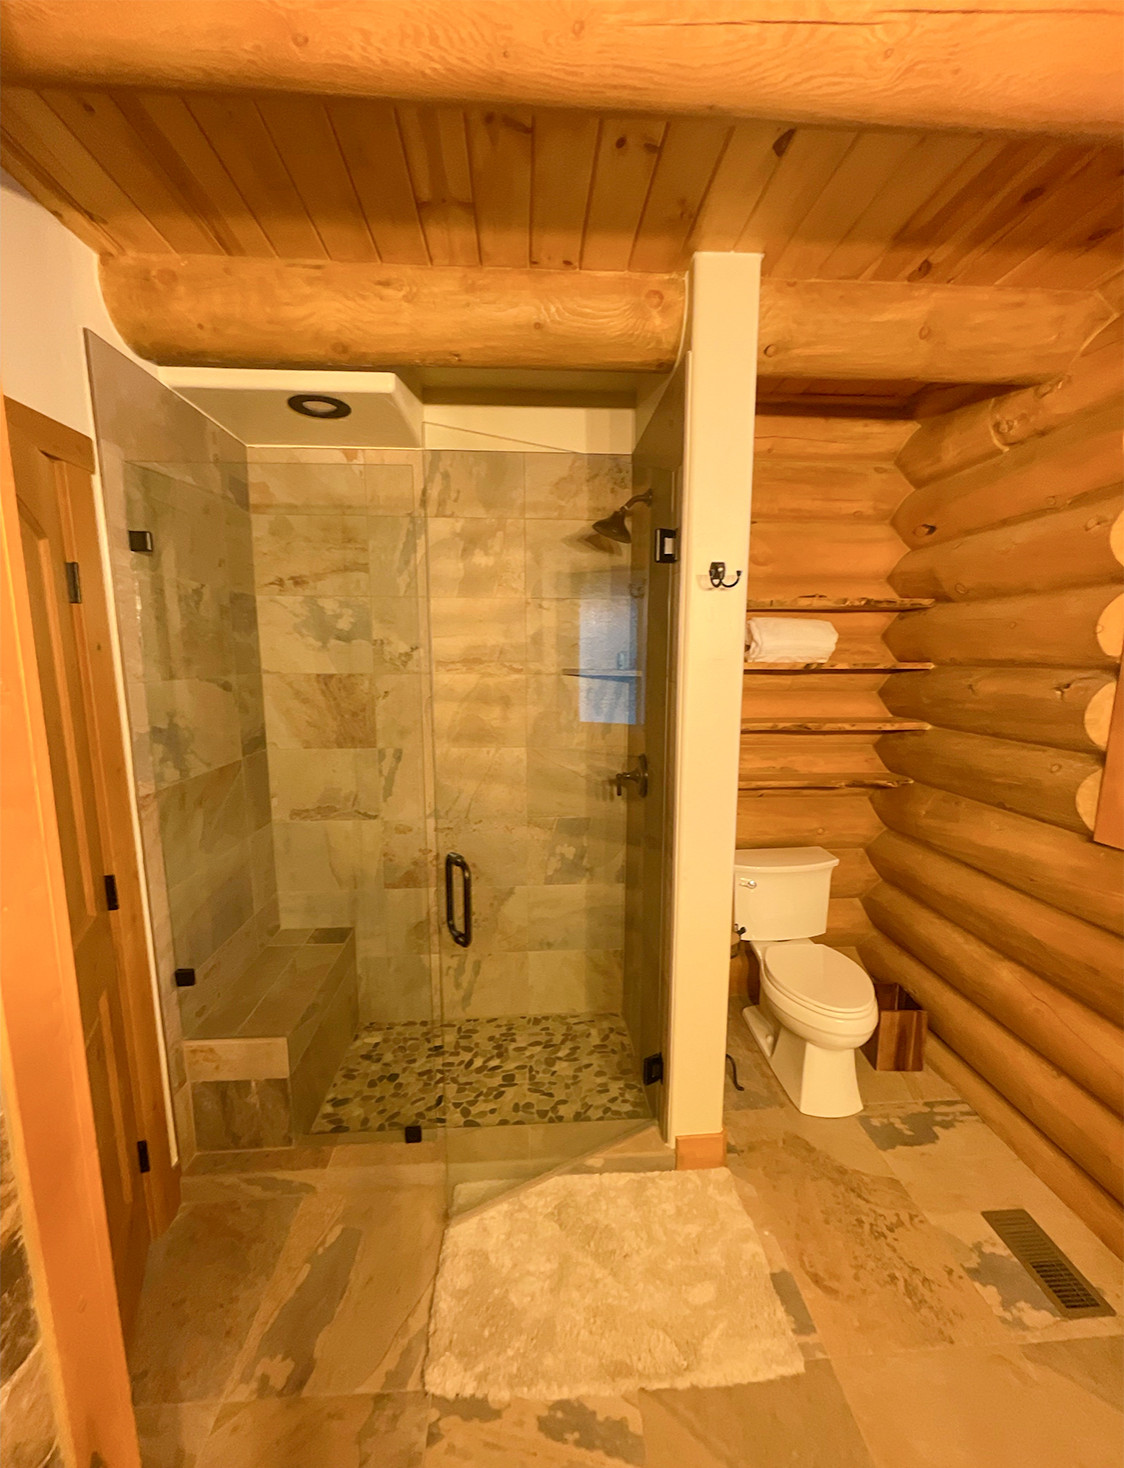 Bathroom - bathroom idea in Denver